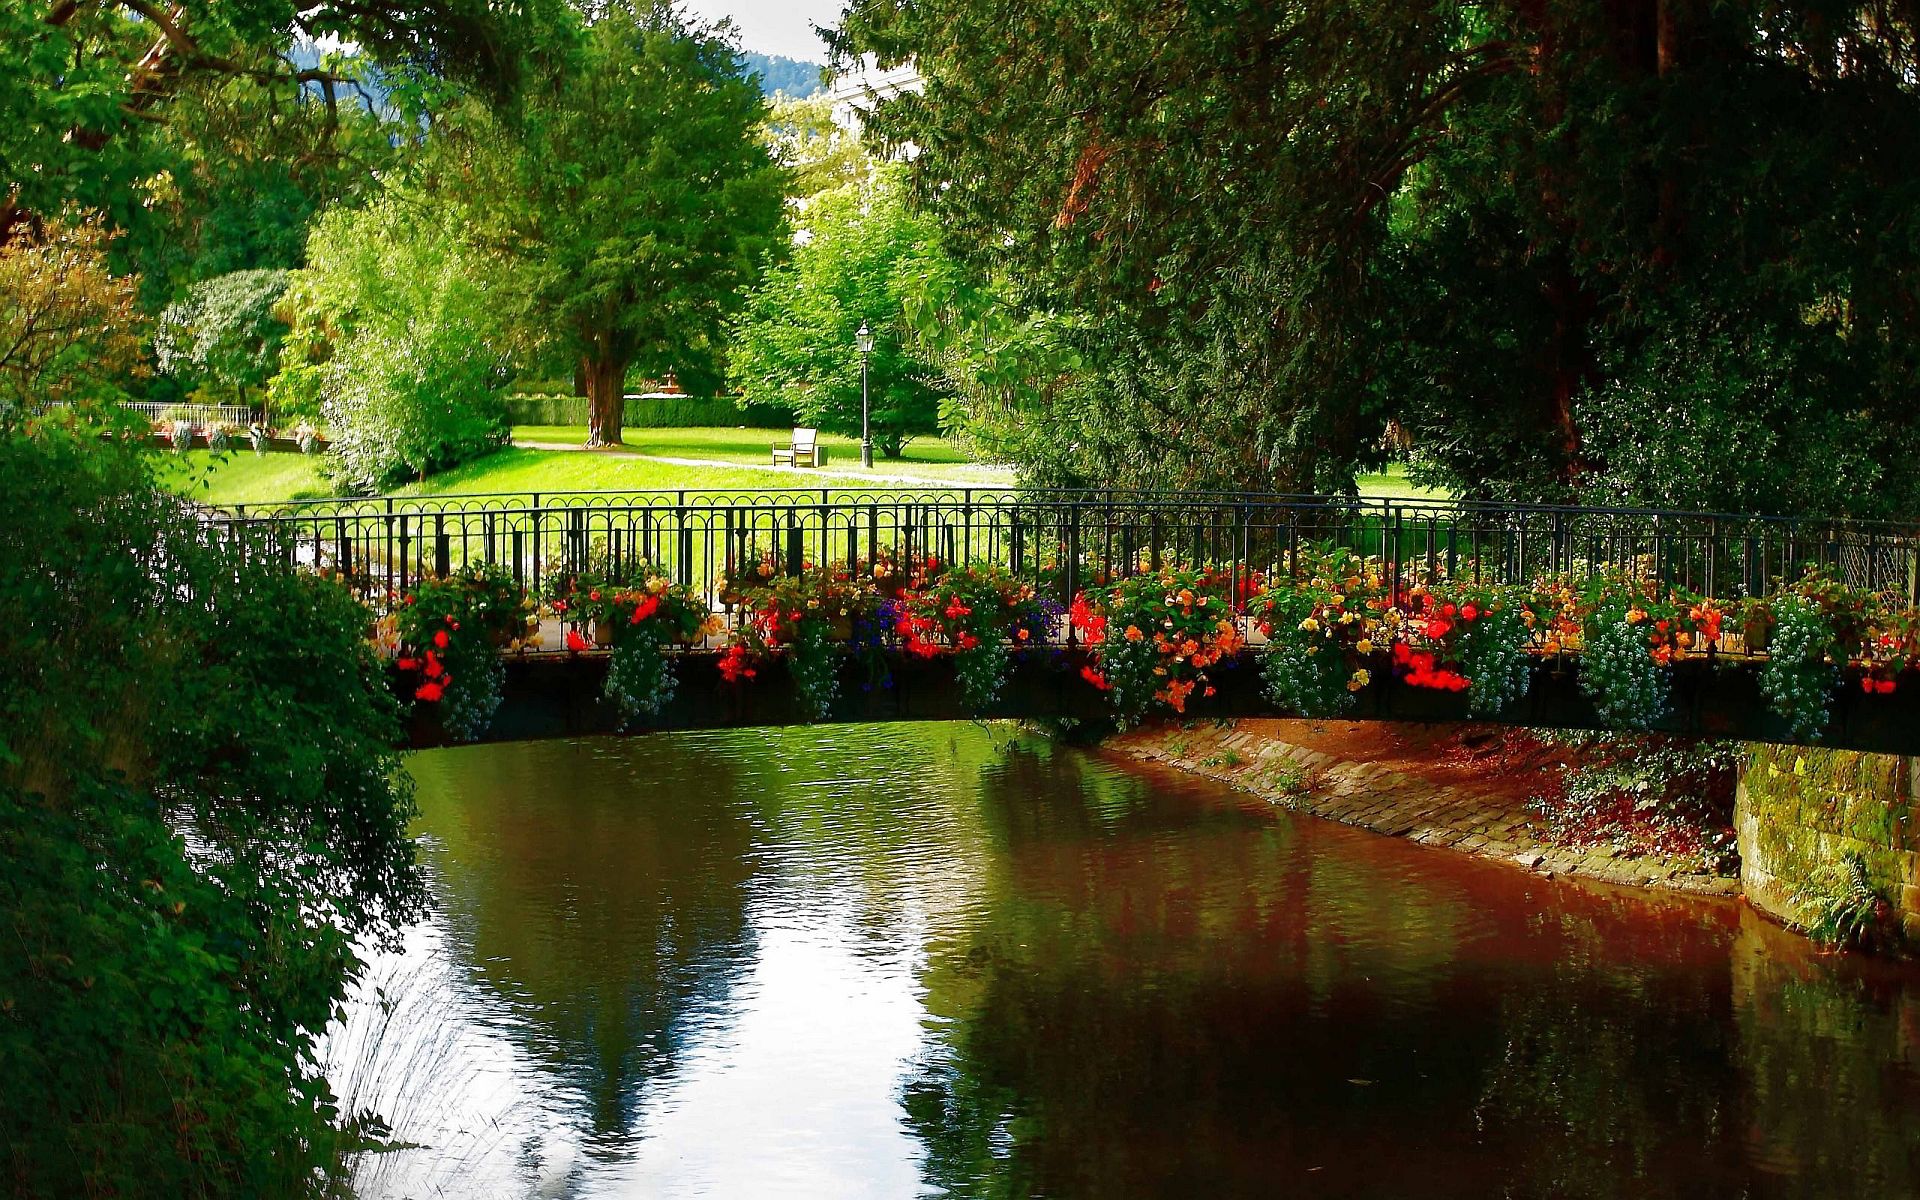 تصویر جذاب پل روی دریاچه در پارک با تزئین گل های بهاری